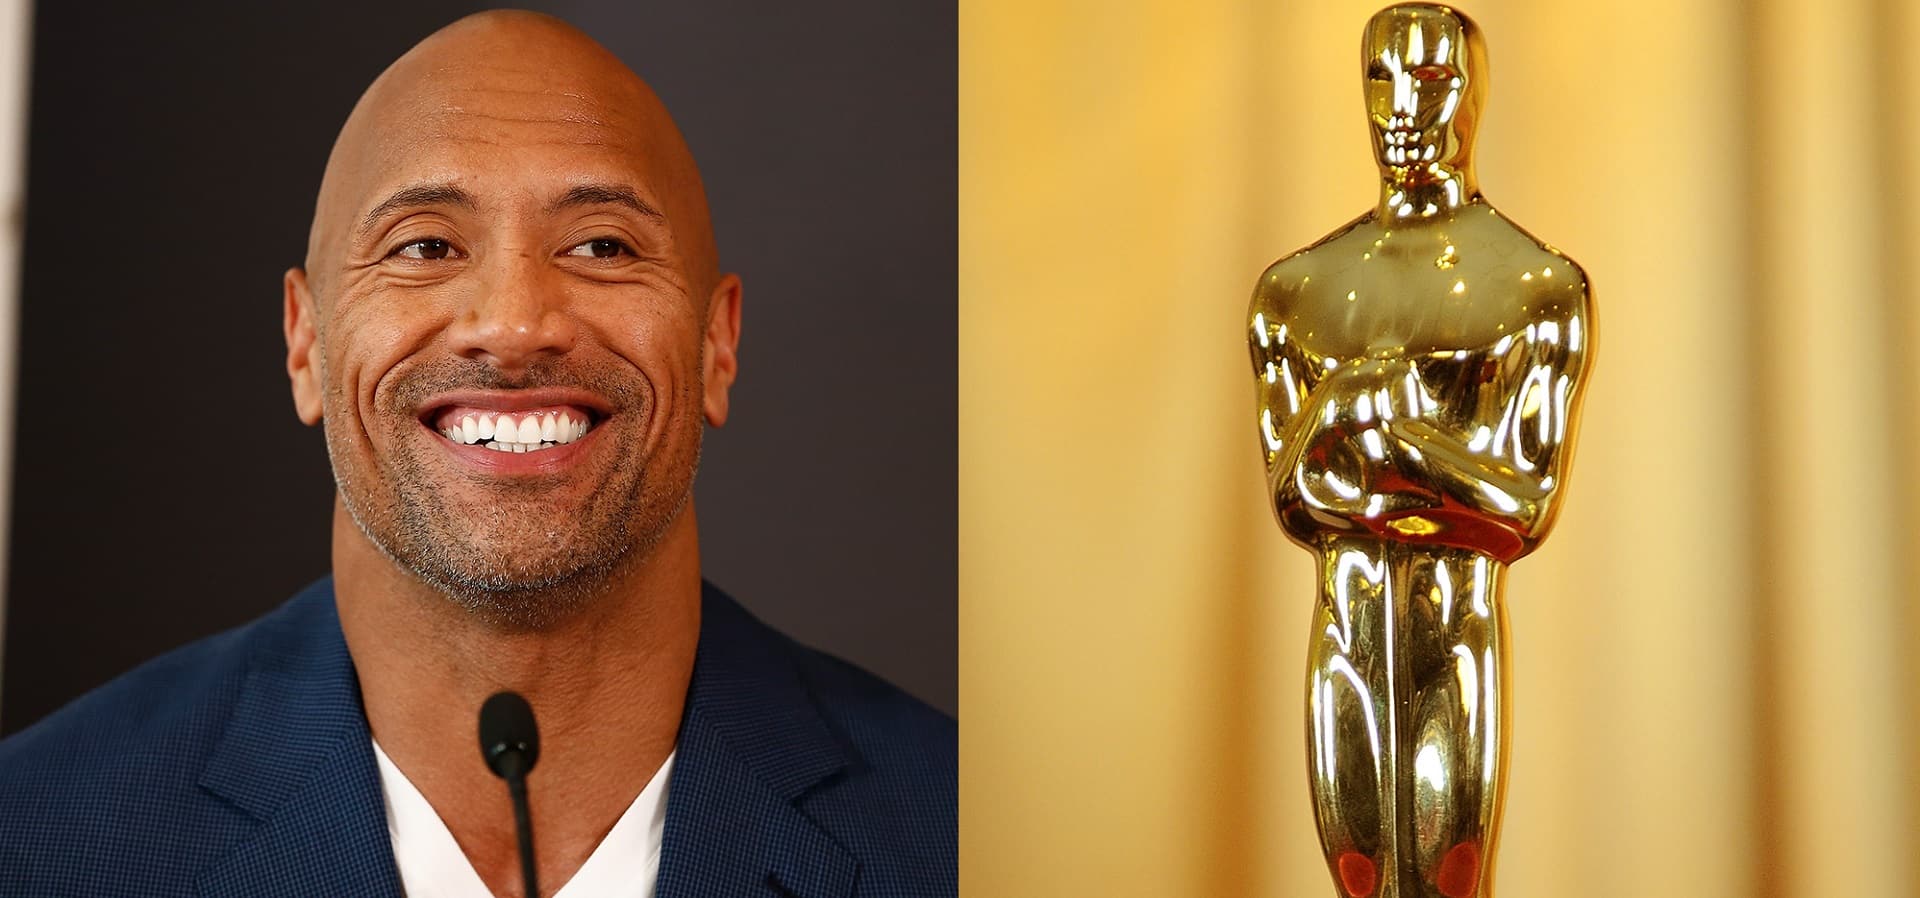 Oscar 2019: Dwayne Johnson spiega perché non sarà il conduttore